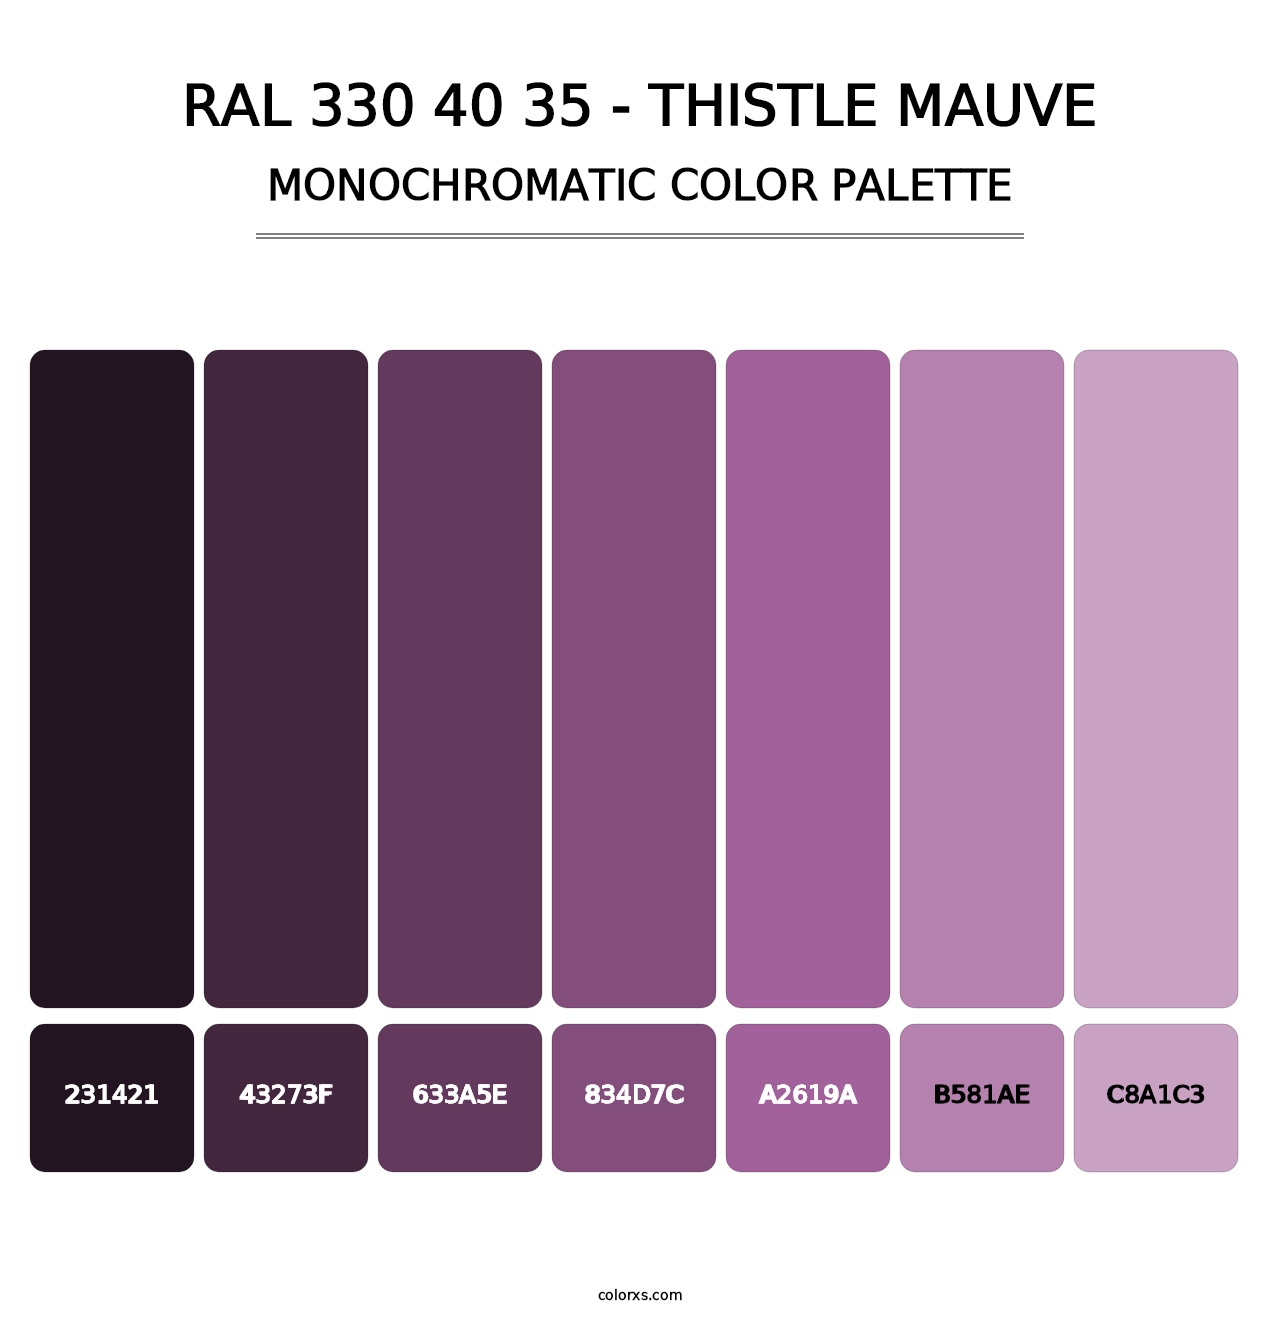 RAL 330 40 35 - Thistle Mauve - Monochromatic Color Palette